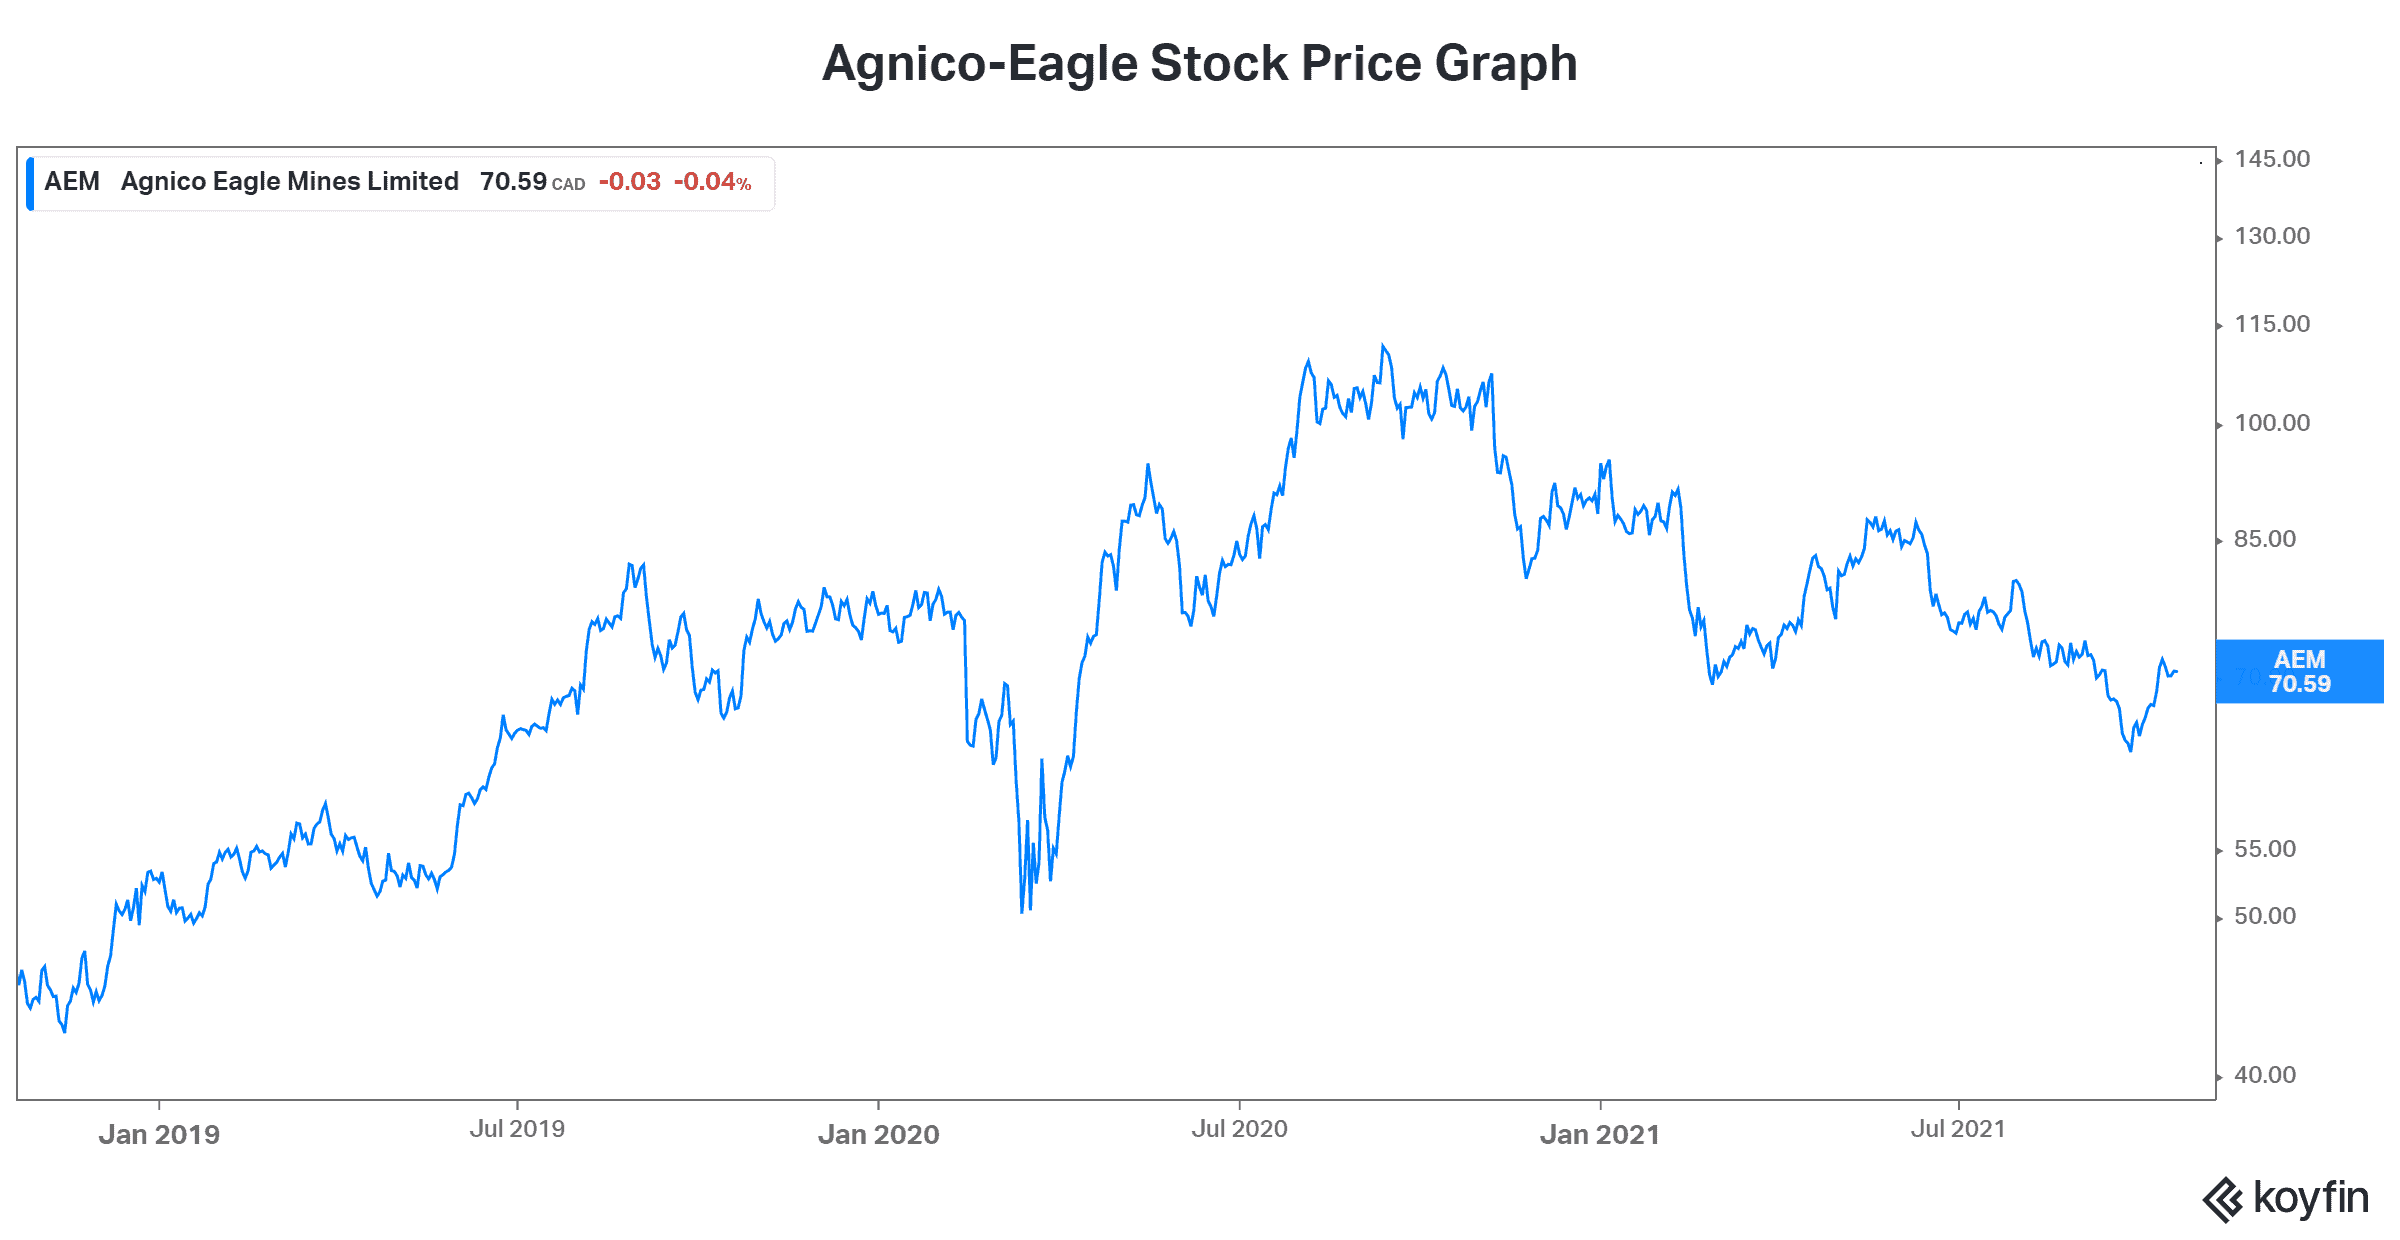 Gold stock Agnico-Eagle